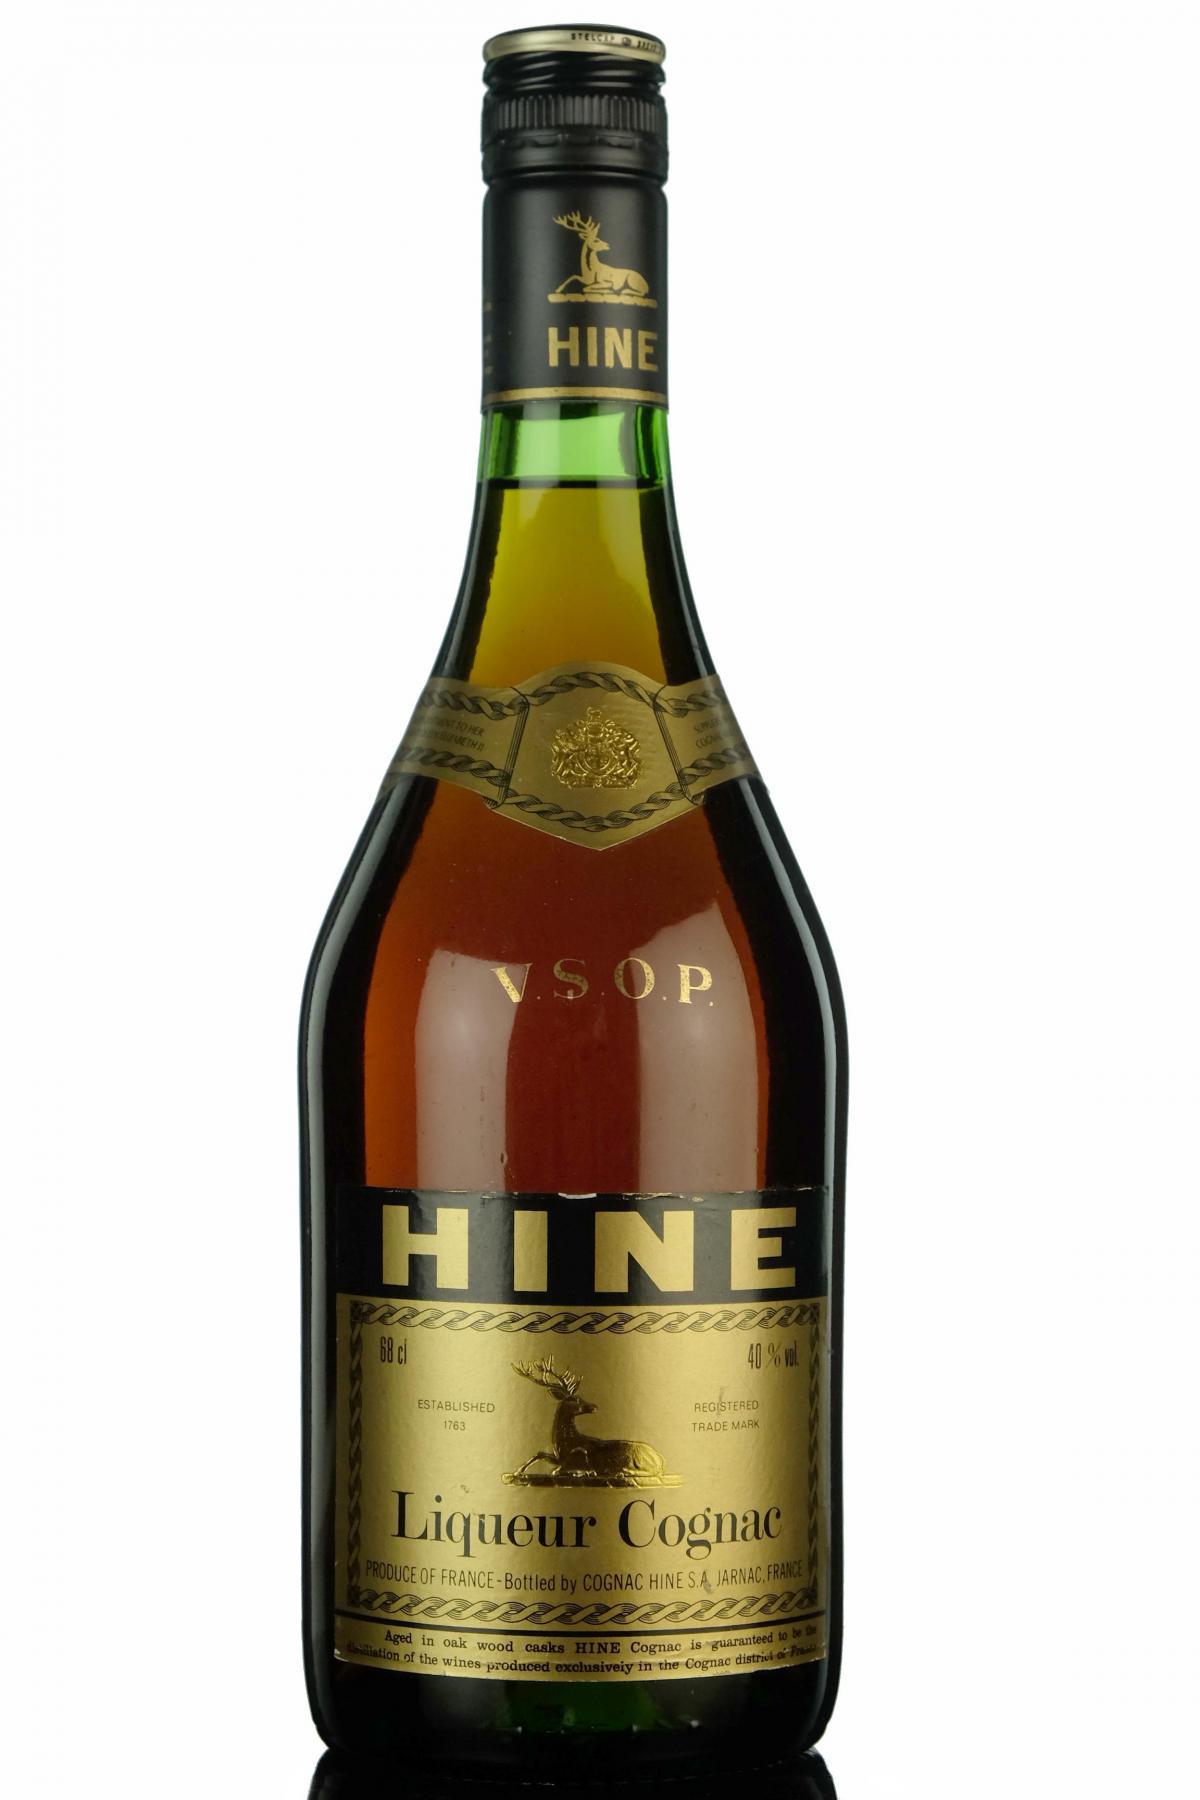 Hine Liqueur Cognac